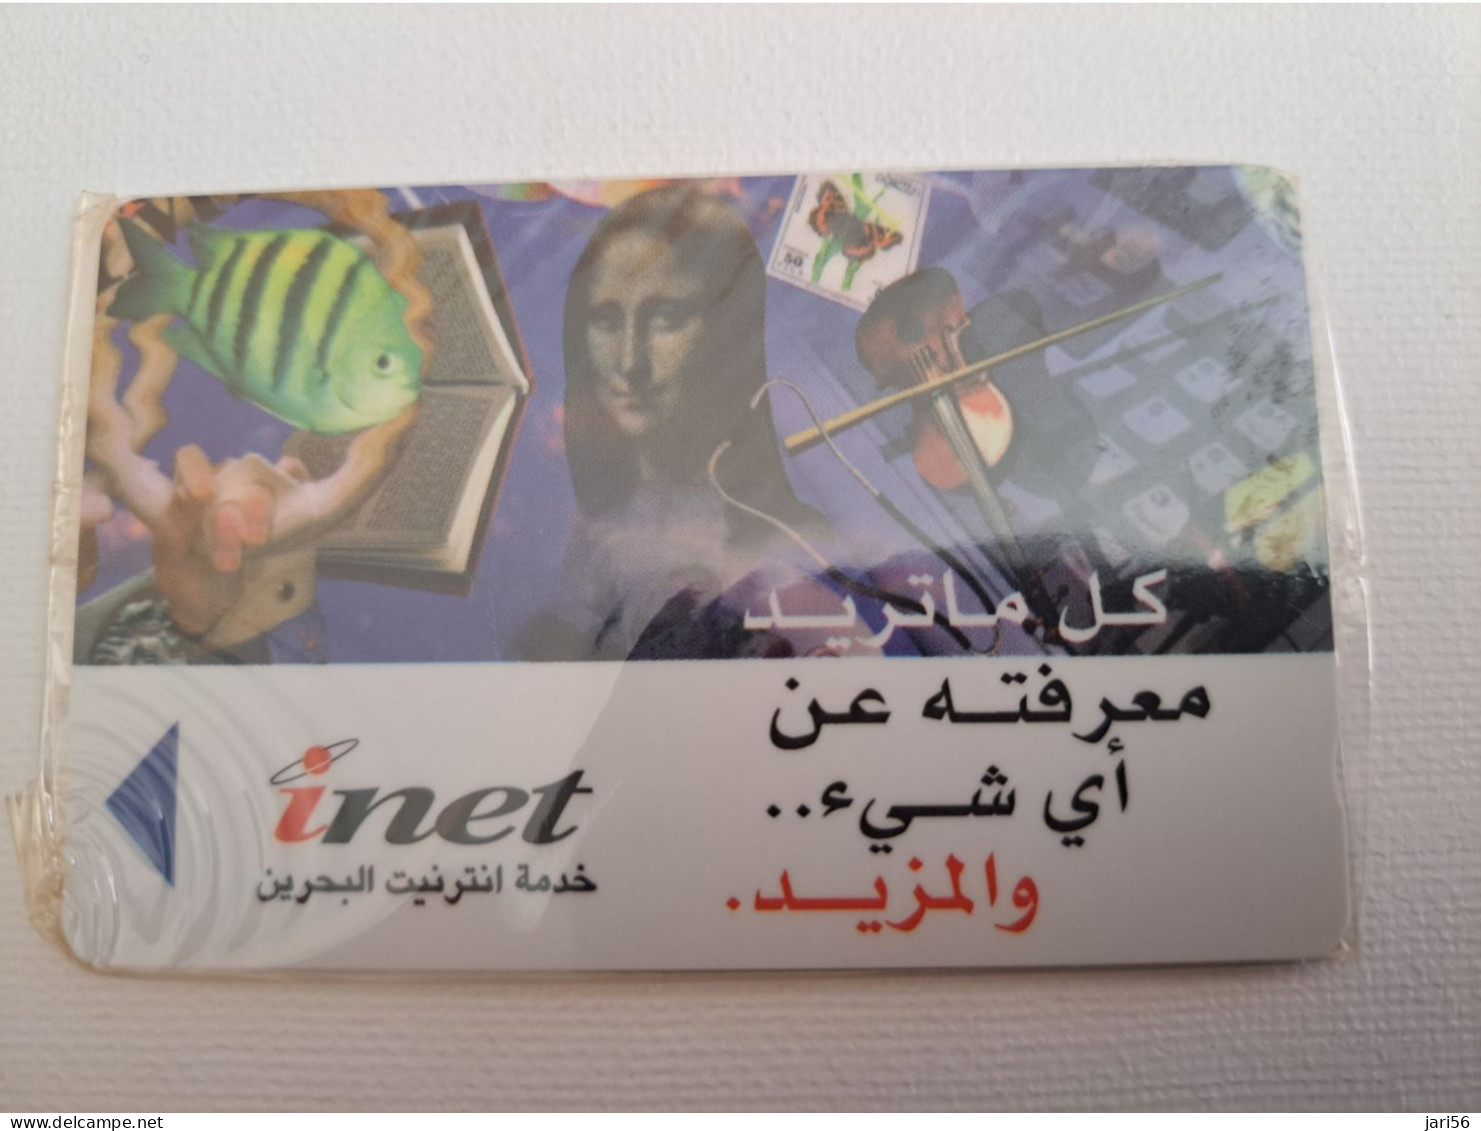 BAHRAIN   GPT CARD  25 UNITS/   /  MINT CARD IN WRAPPER/ INET/  !!!  / BHN76  / 41BAHG /SHALLOW  NOTCH   **13537** - Baharain